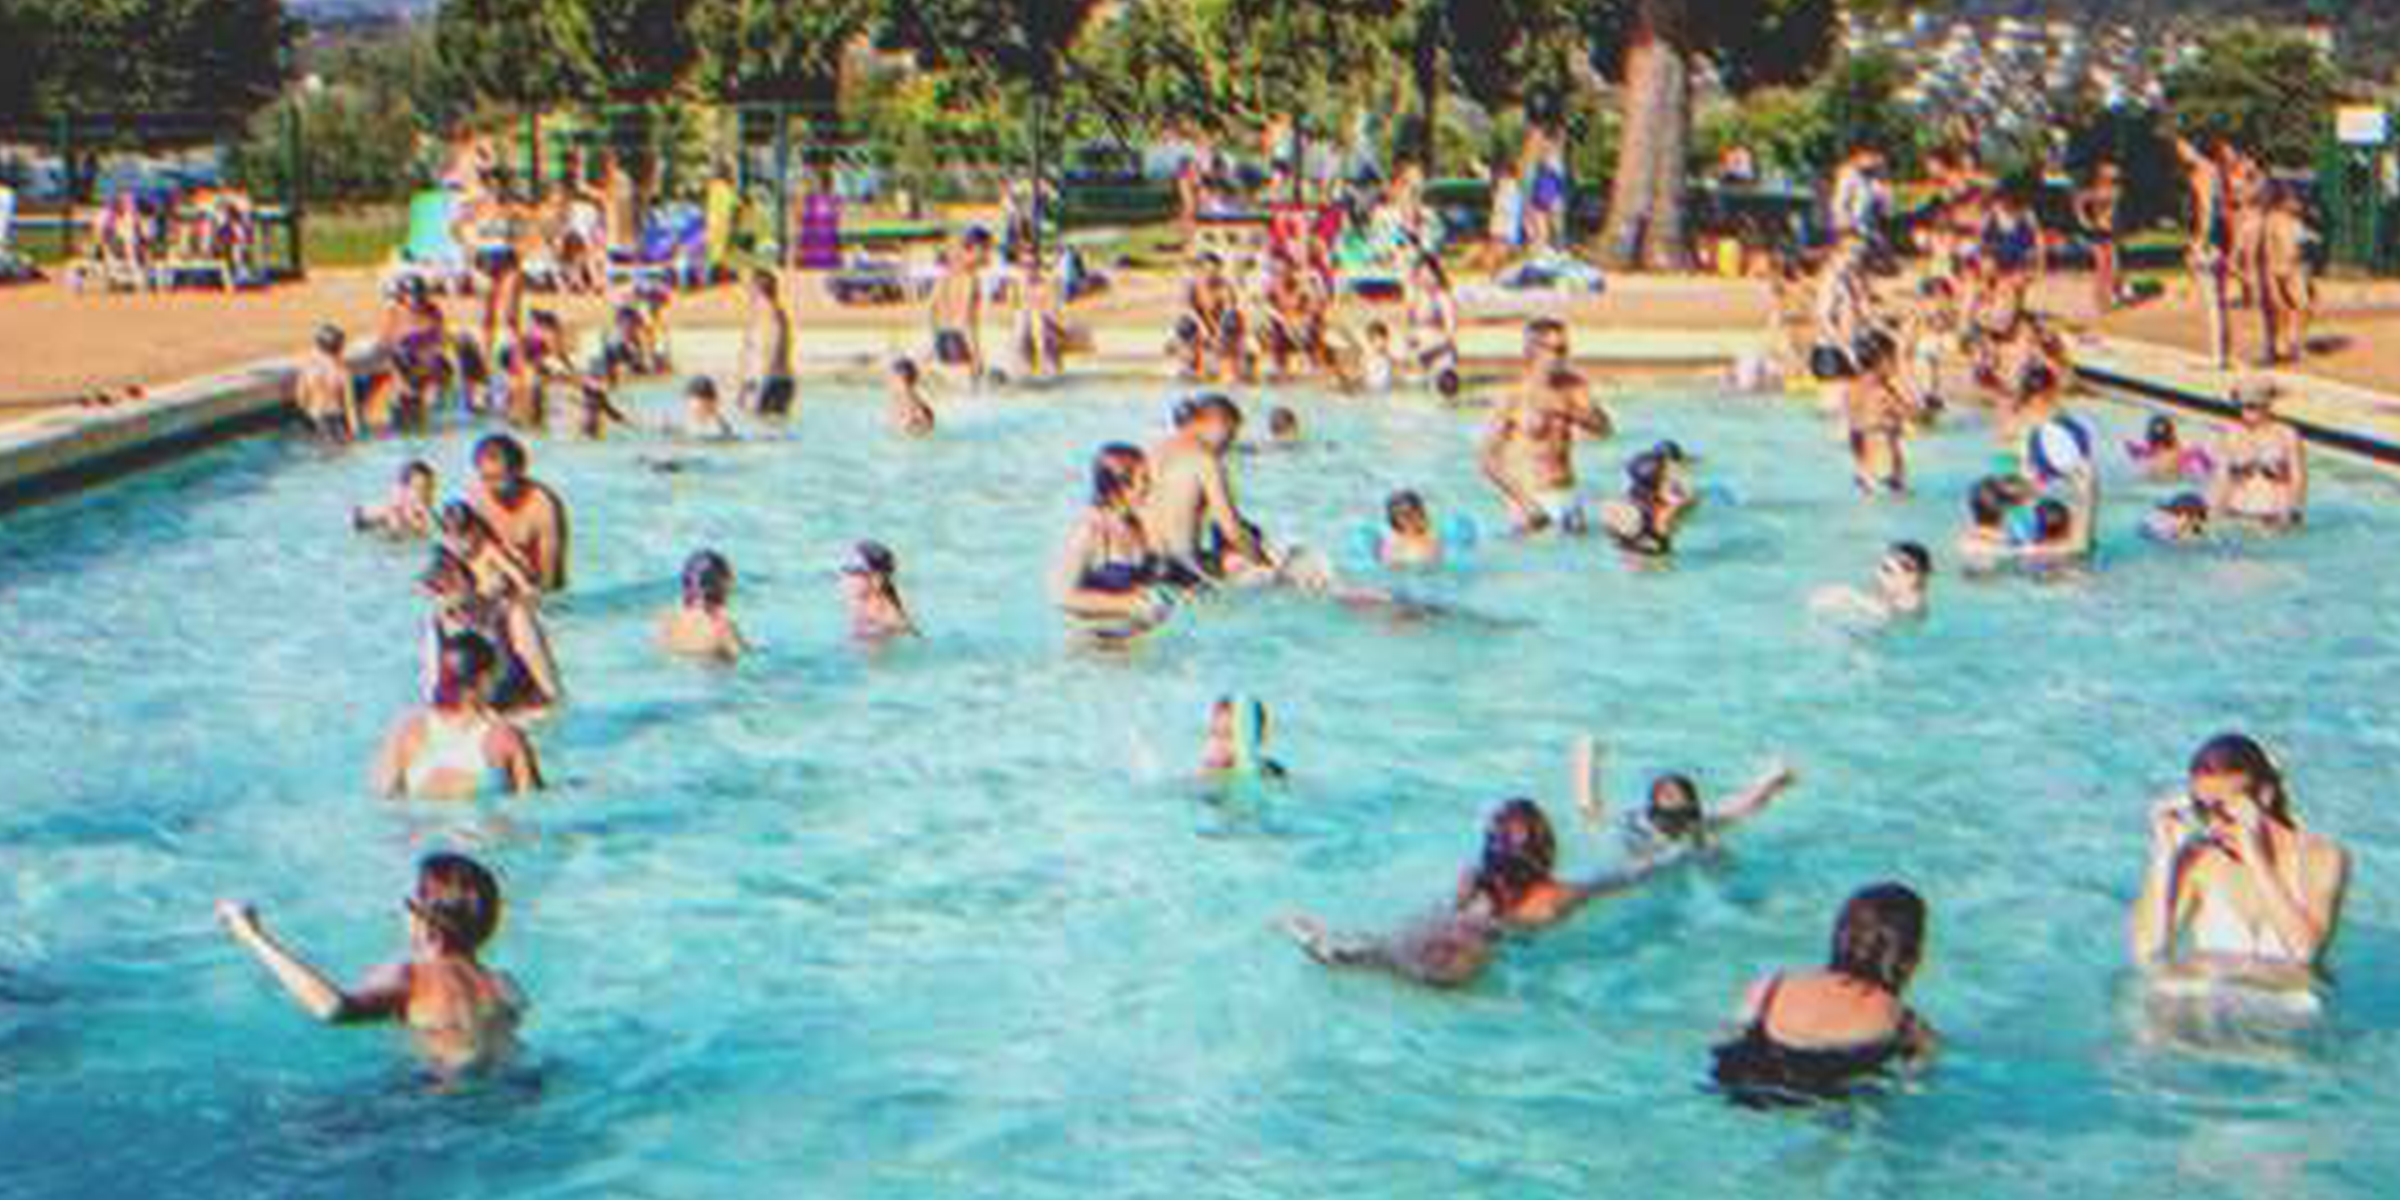 Ein öffentliches Schwimmbad | Quelle: Flickr / N i c o l a